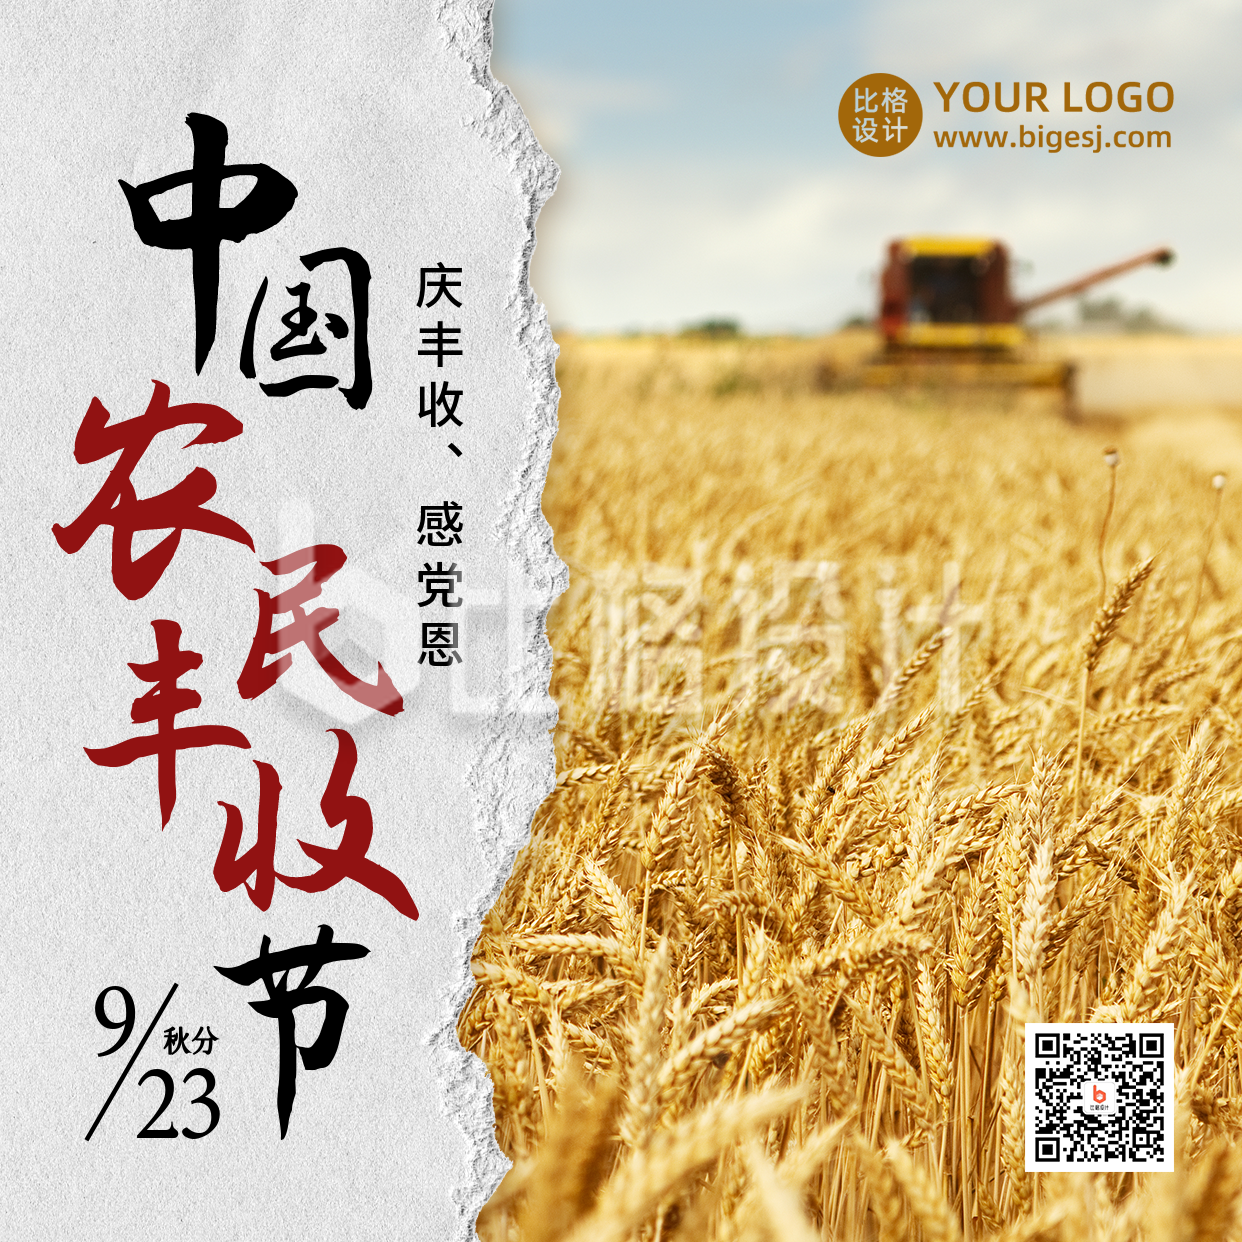 中国农民丰收节农耕实景简约方形海报